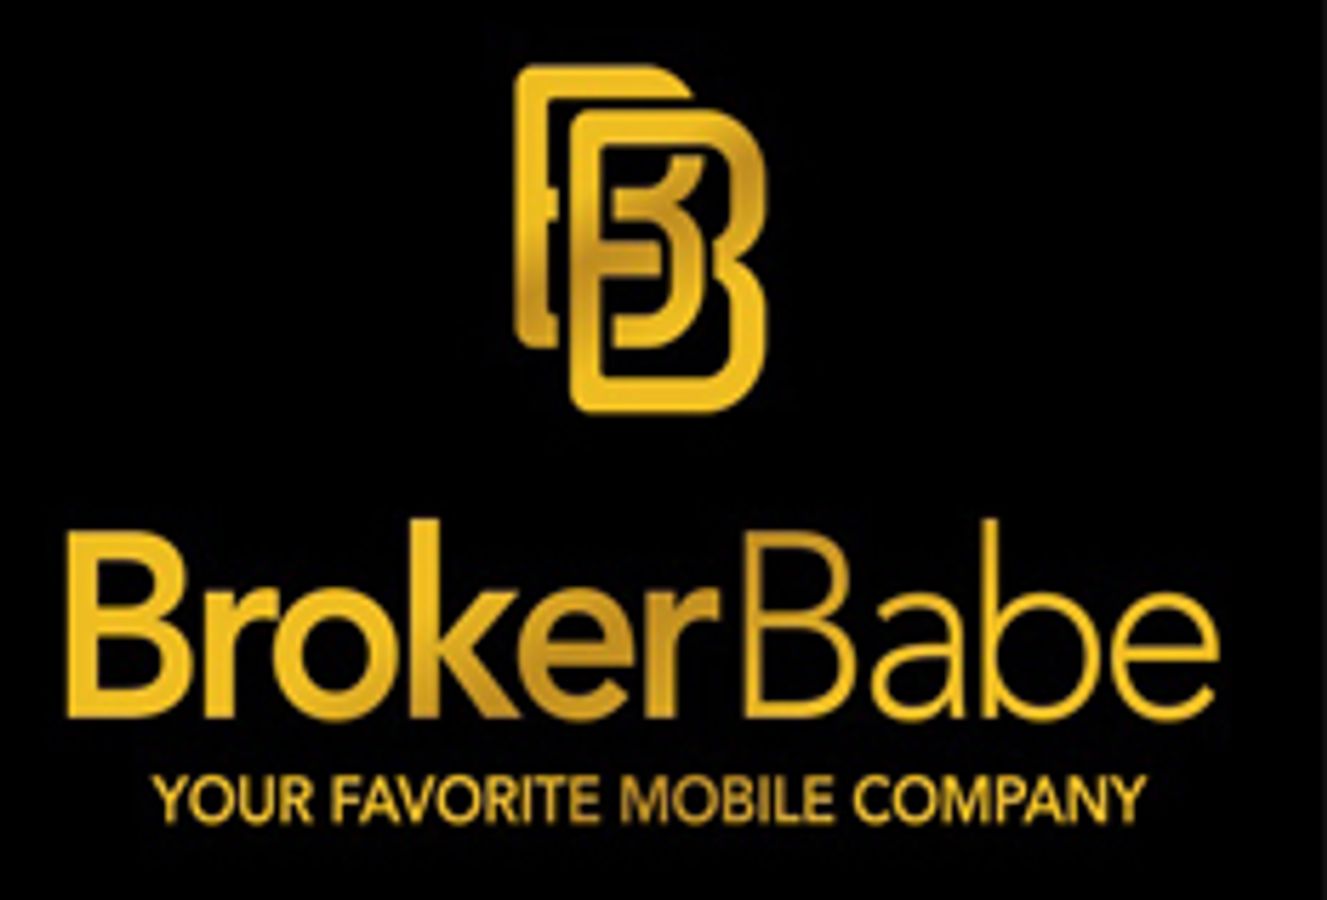 Brokerbabe.com